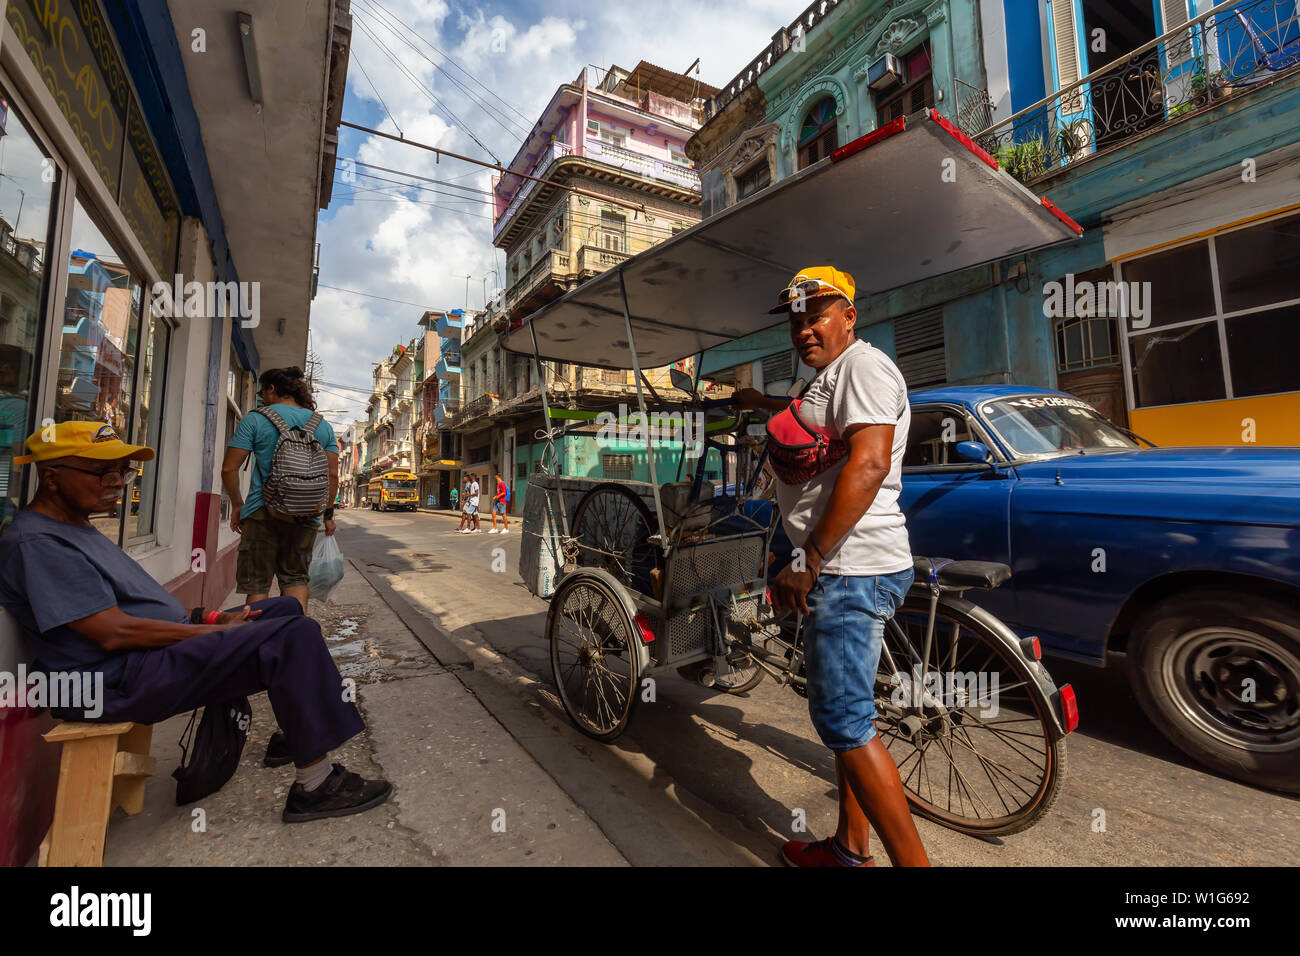 L'Avana, Cuba - 14 Maggio 2019: il popolo cubano per le strade della vecchia città dell'Avana, capitale di Cuba, durante una luminosa e soleggiata giornata. Foto Stock